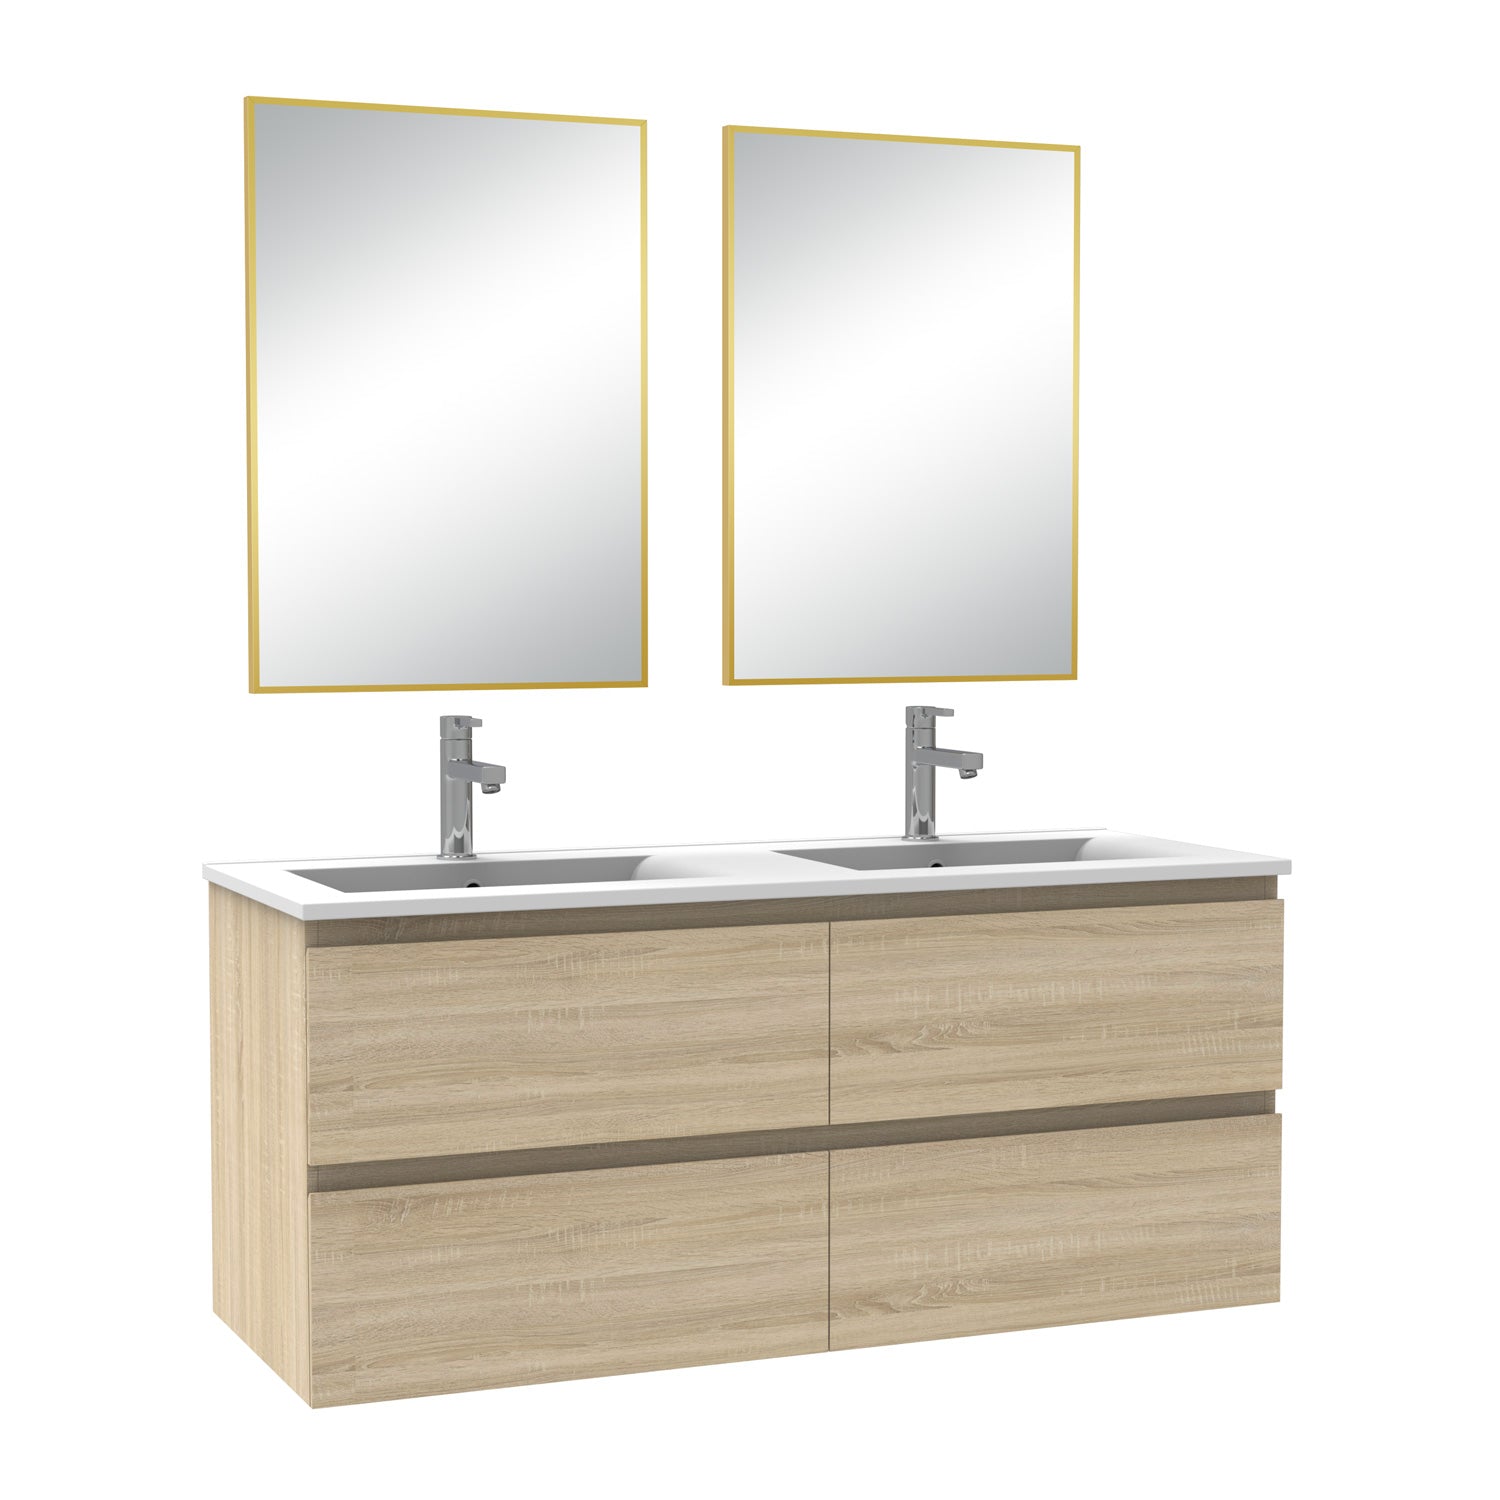 Meuble salle de bain double vasque 120cm blanc/Anthracite/Chêne Wotan meuble acve miroir - Aica -Livraison gratuite